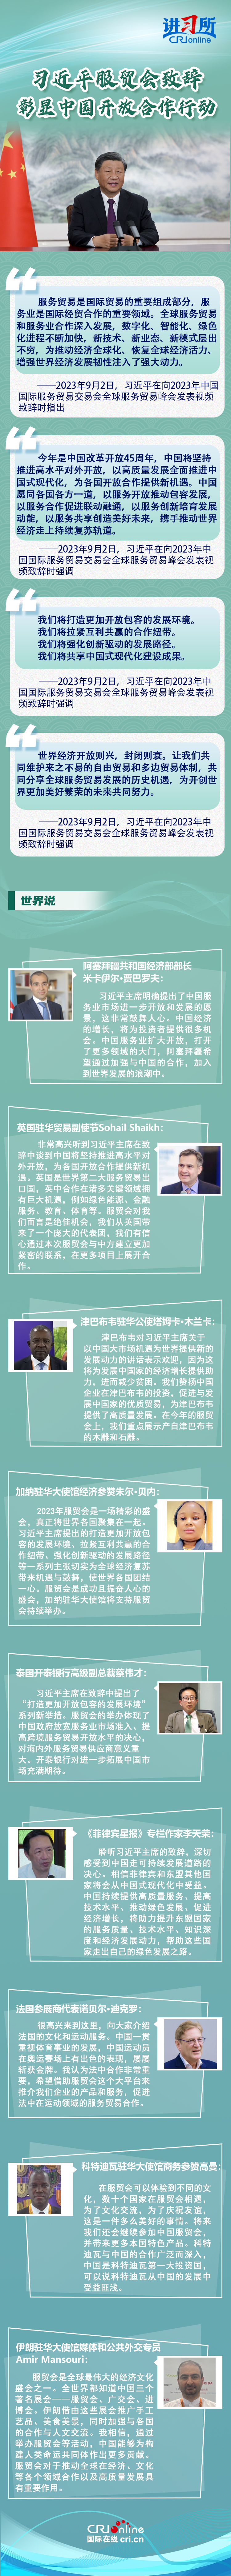 【讲习所·中国与世界】习近平服贸会致辞彰显中国开放合作行动